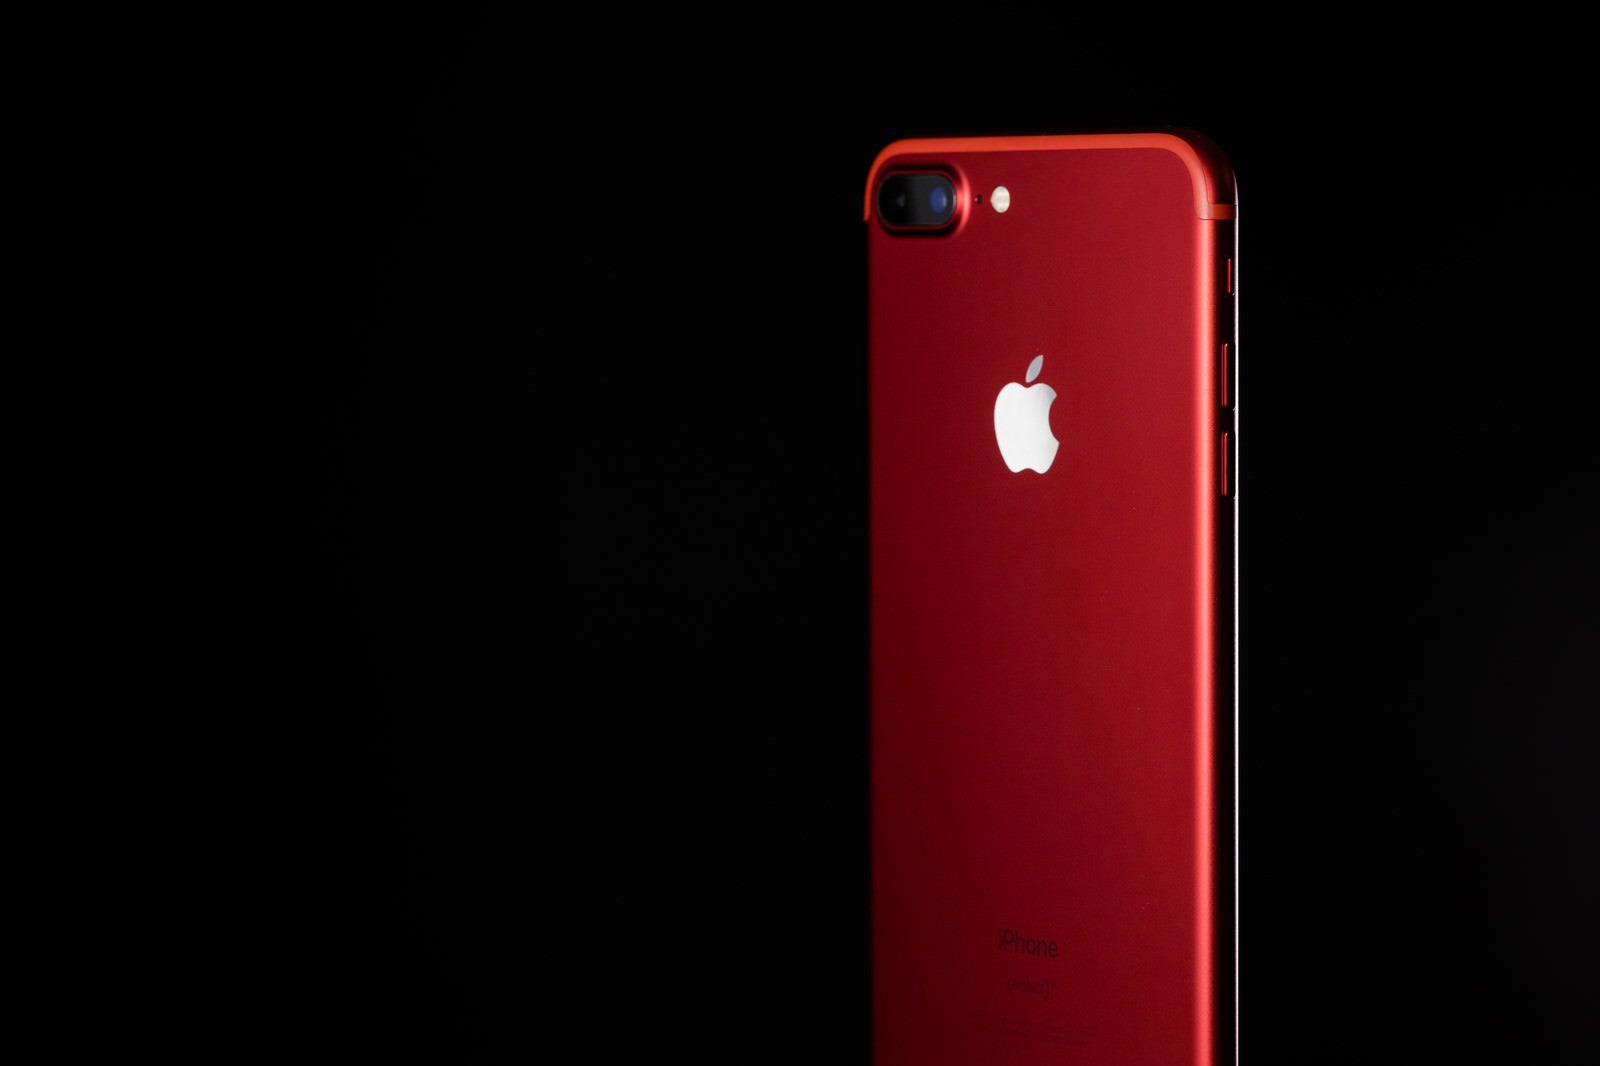 「エイズ対策プログラムの支援で発売された赤いカラーモデルのスマートフォン」の写真